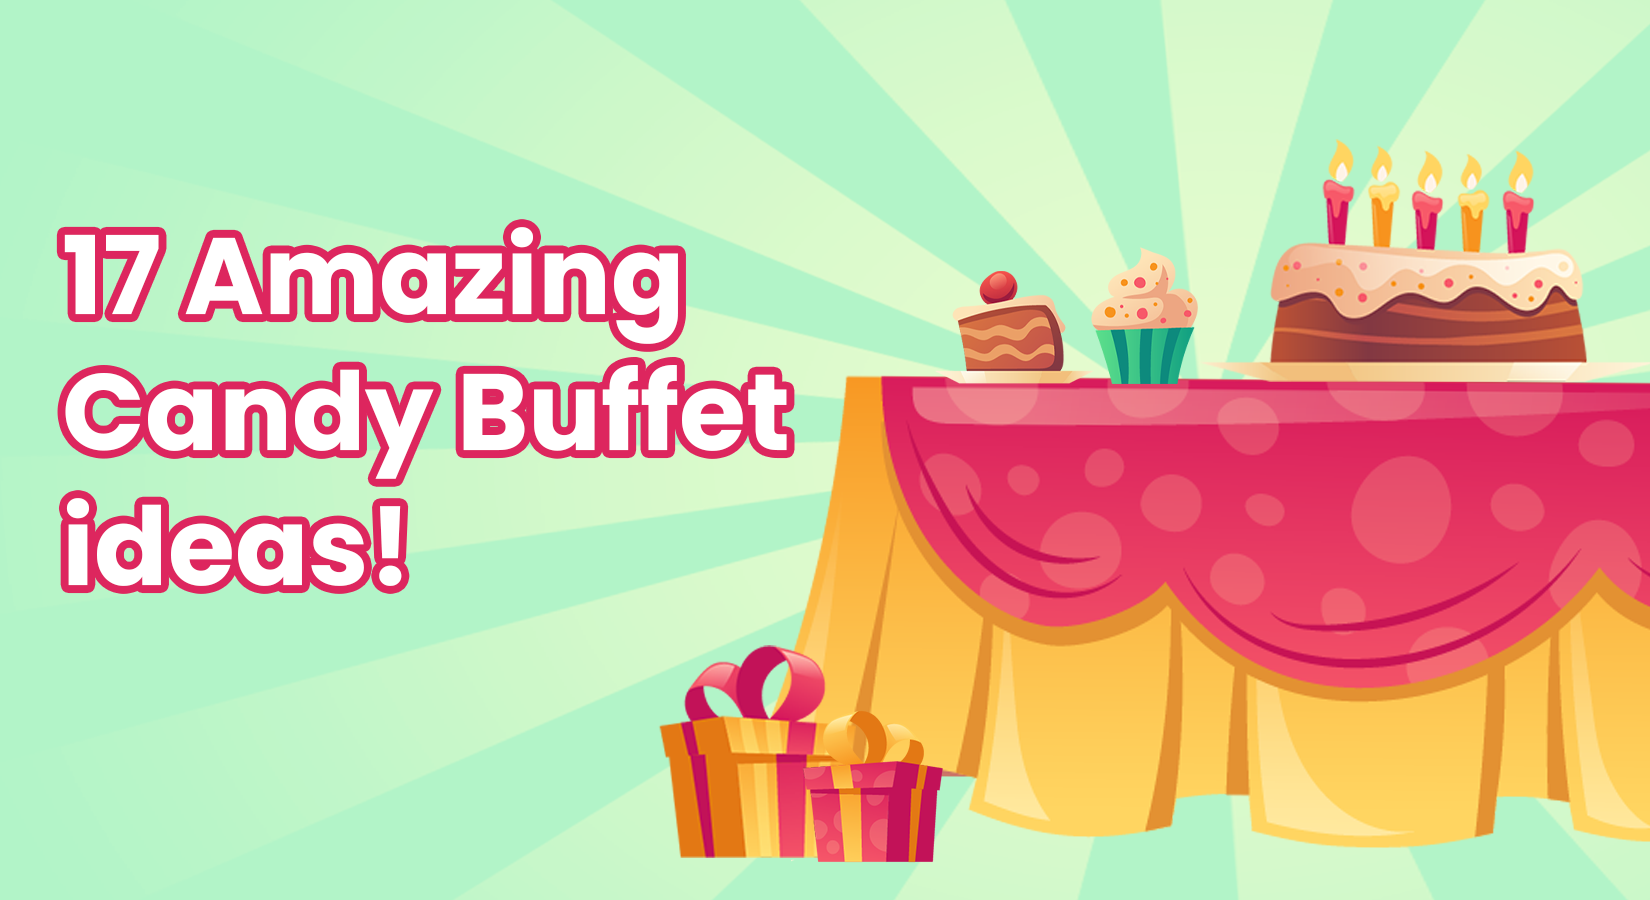 17 Amazing Candy Buffet Ideas [Baby Shower, Wedding, Birthday, DIY]